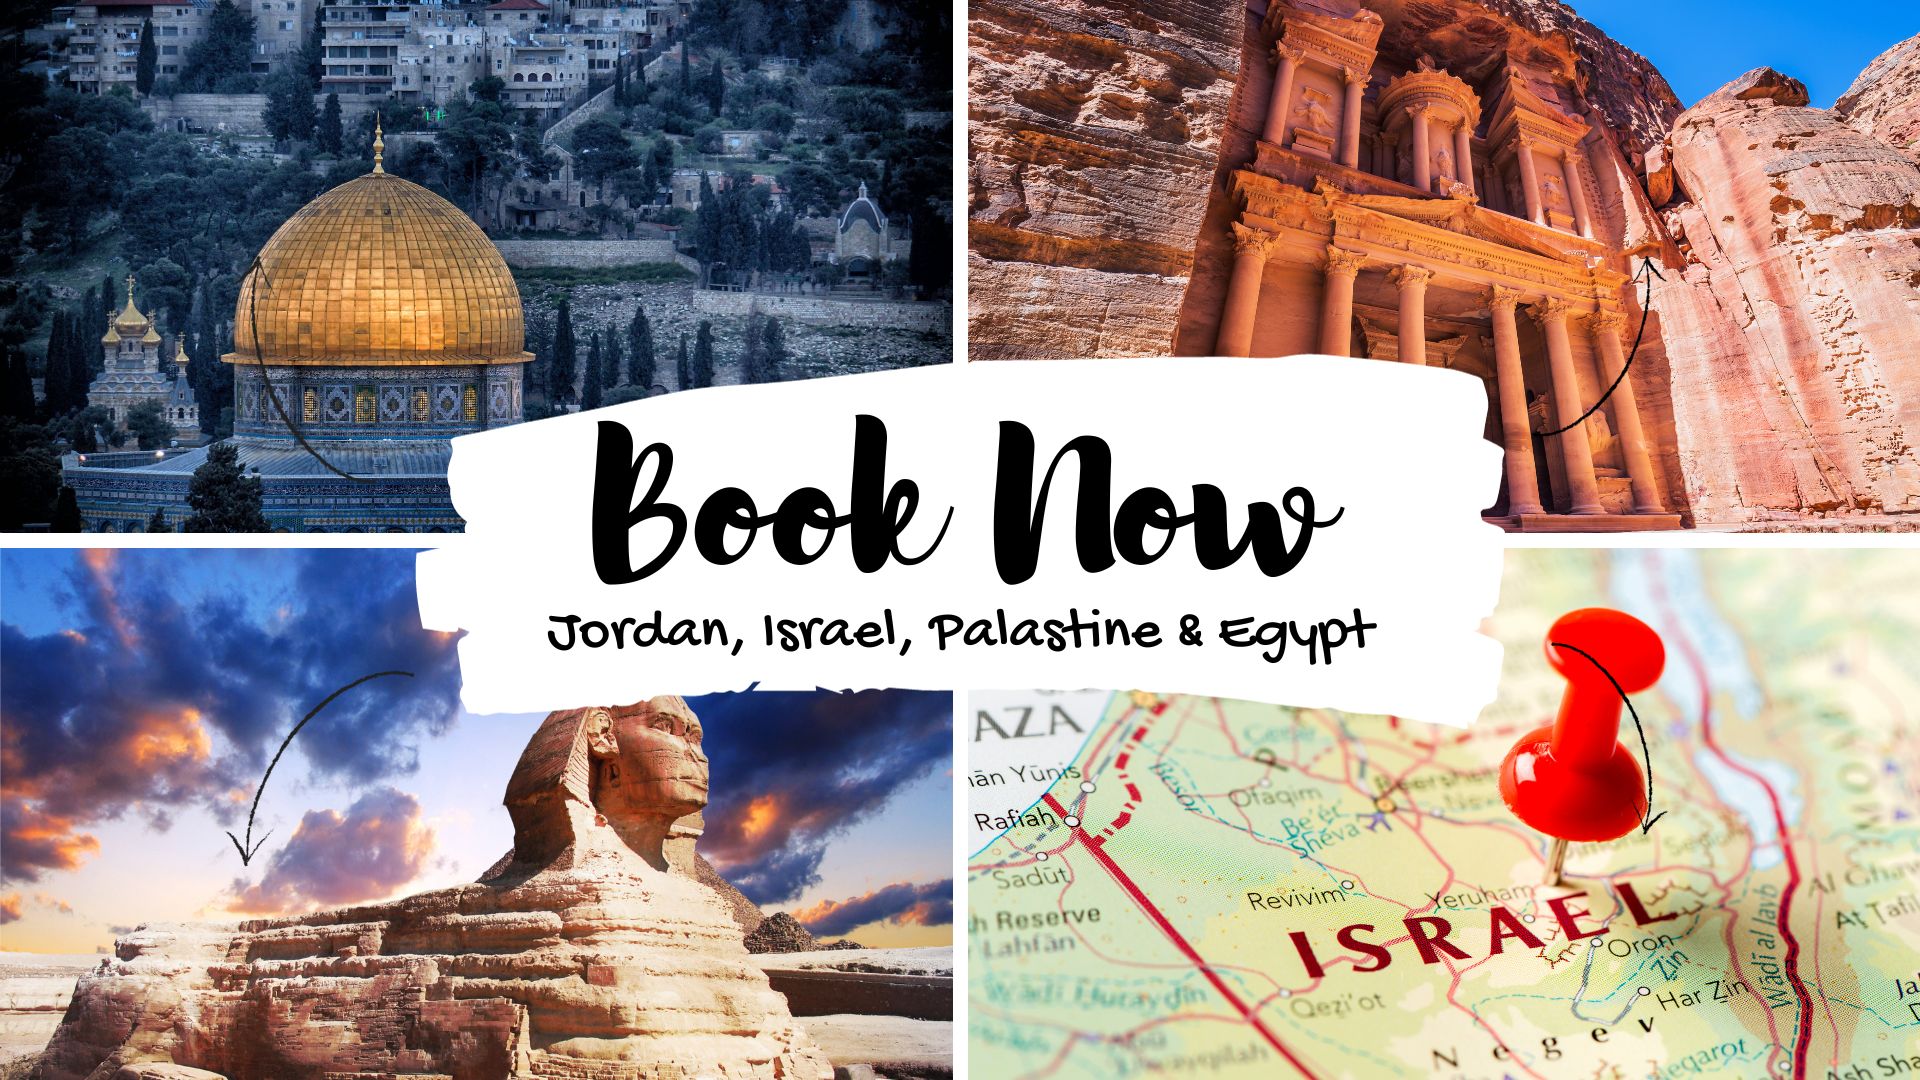 israel-palastine-egypt-jordan-tours-kerala